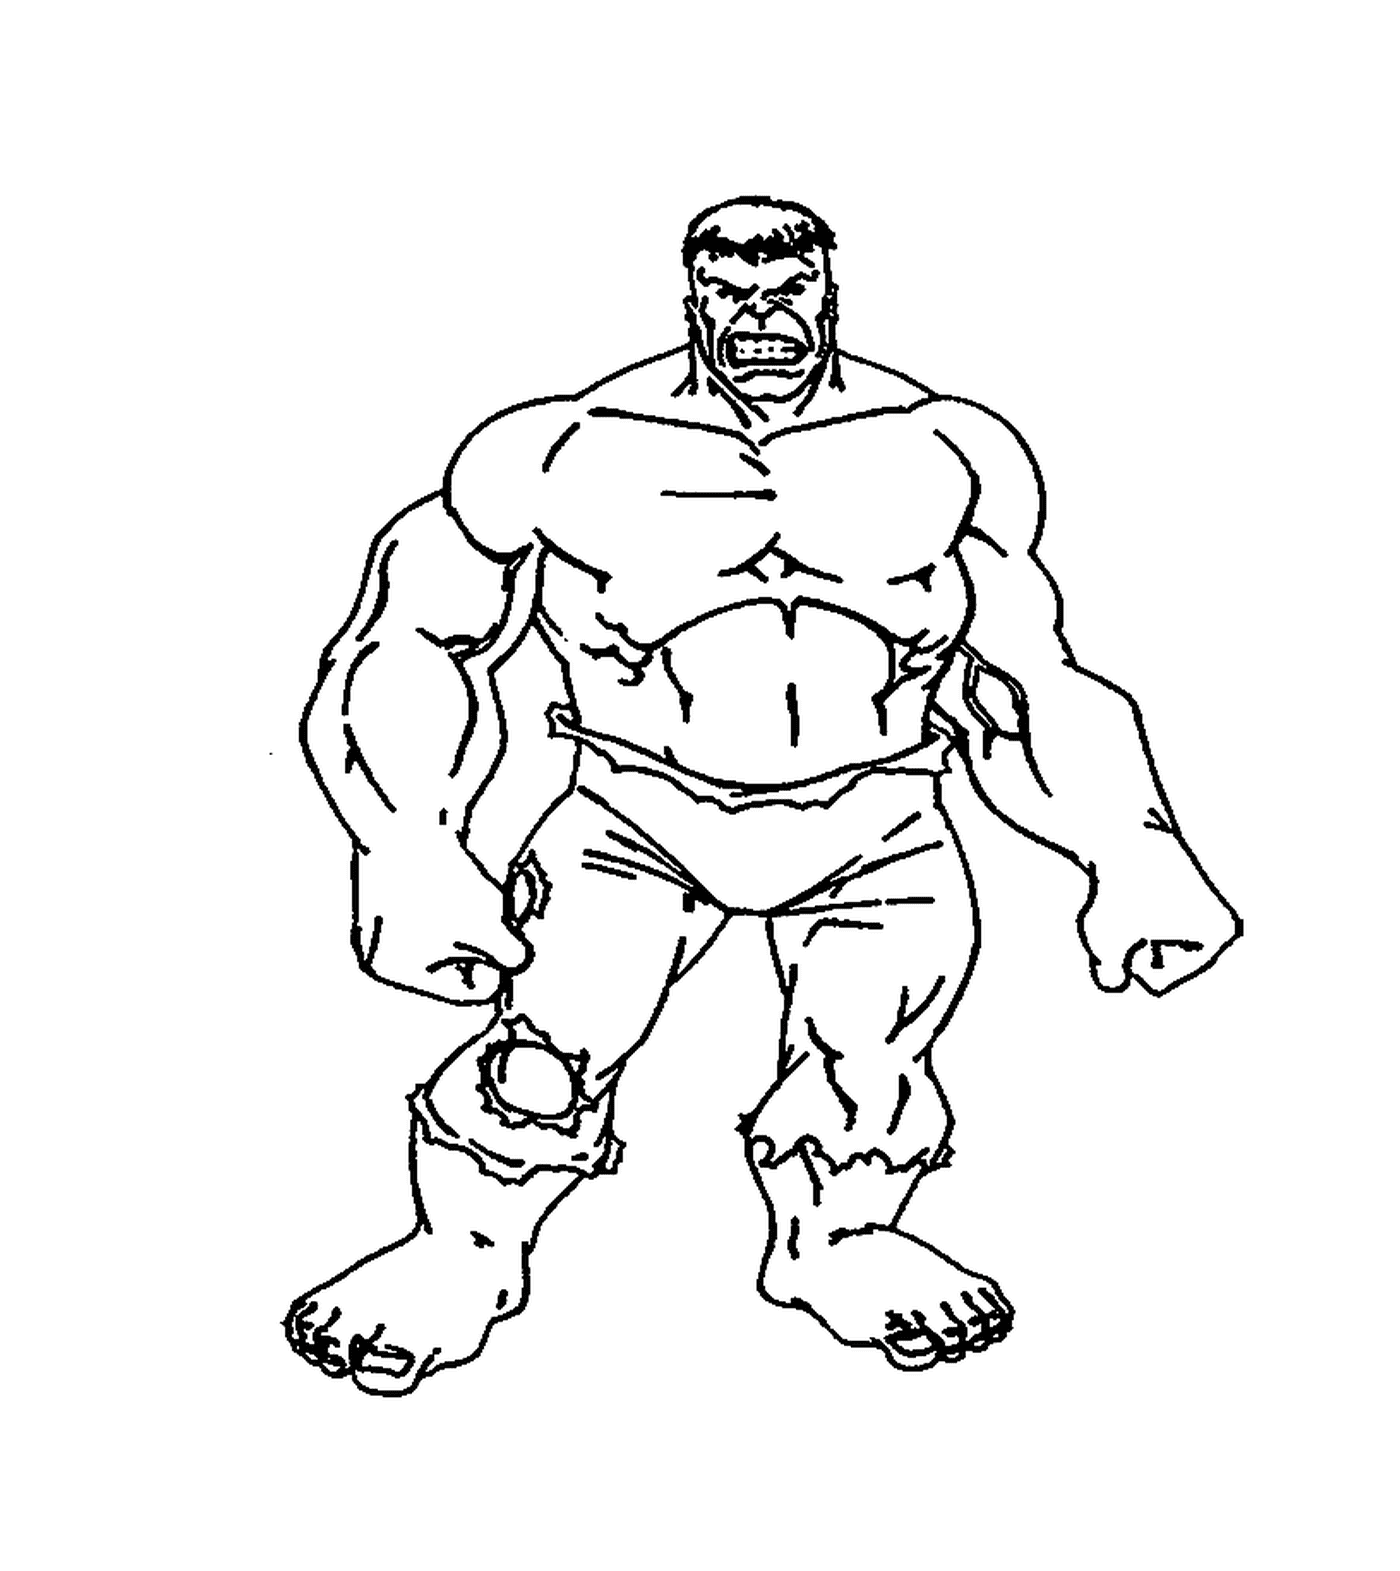  Bruce Banner verwandelt sich in einen Hulk 